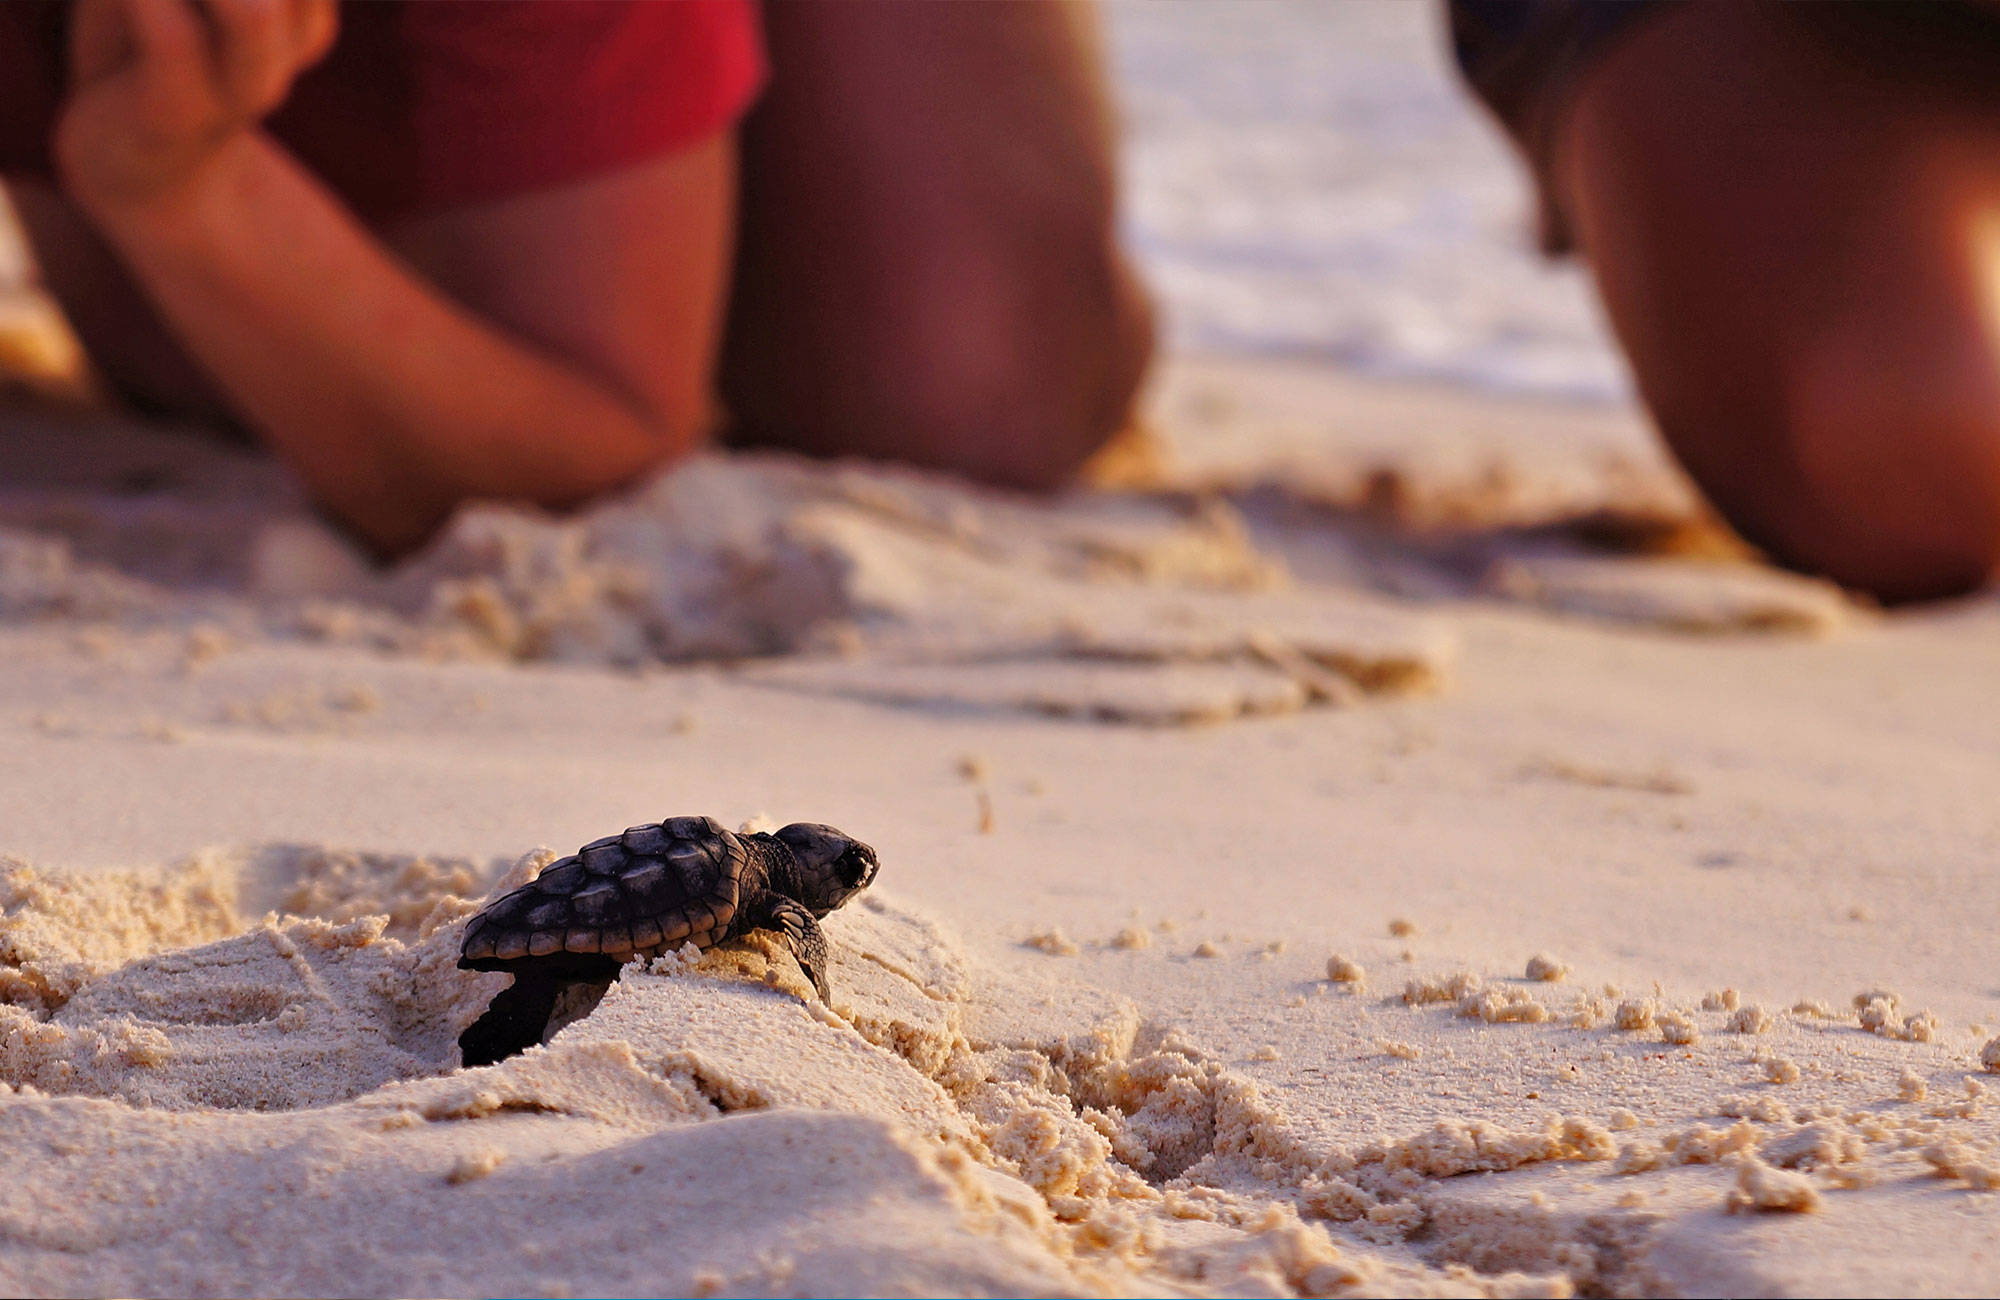 människor tittar på en nykläckt sköldpadda på stranden